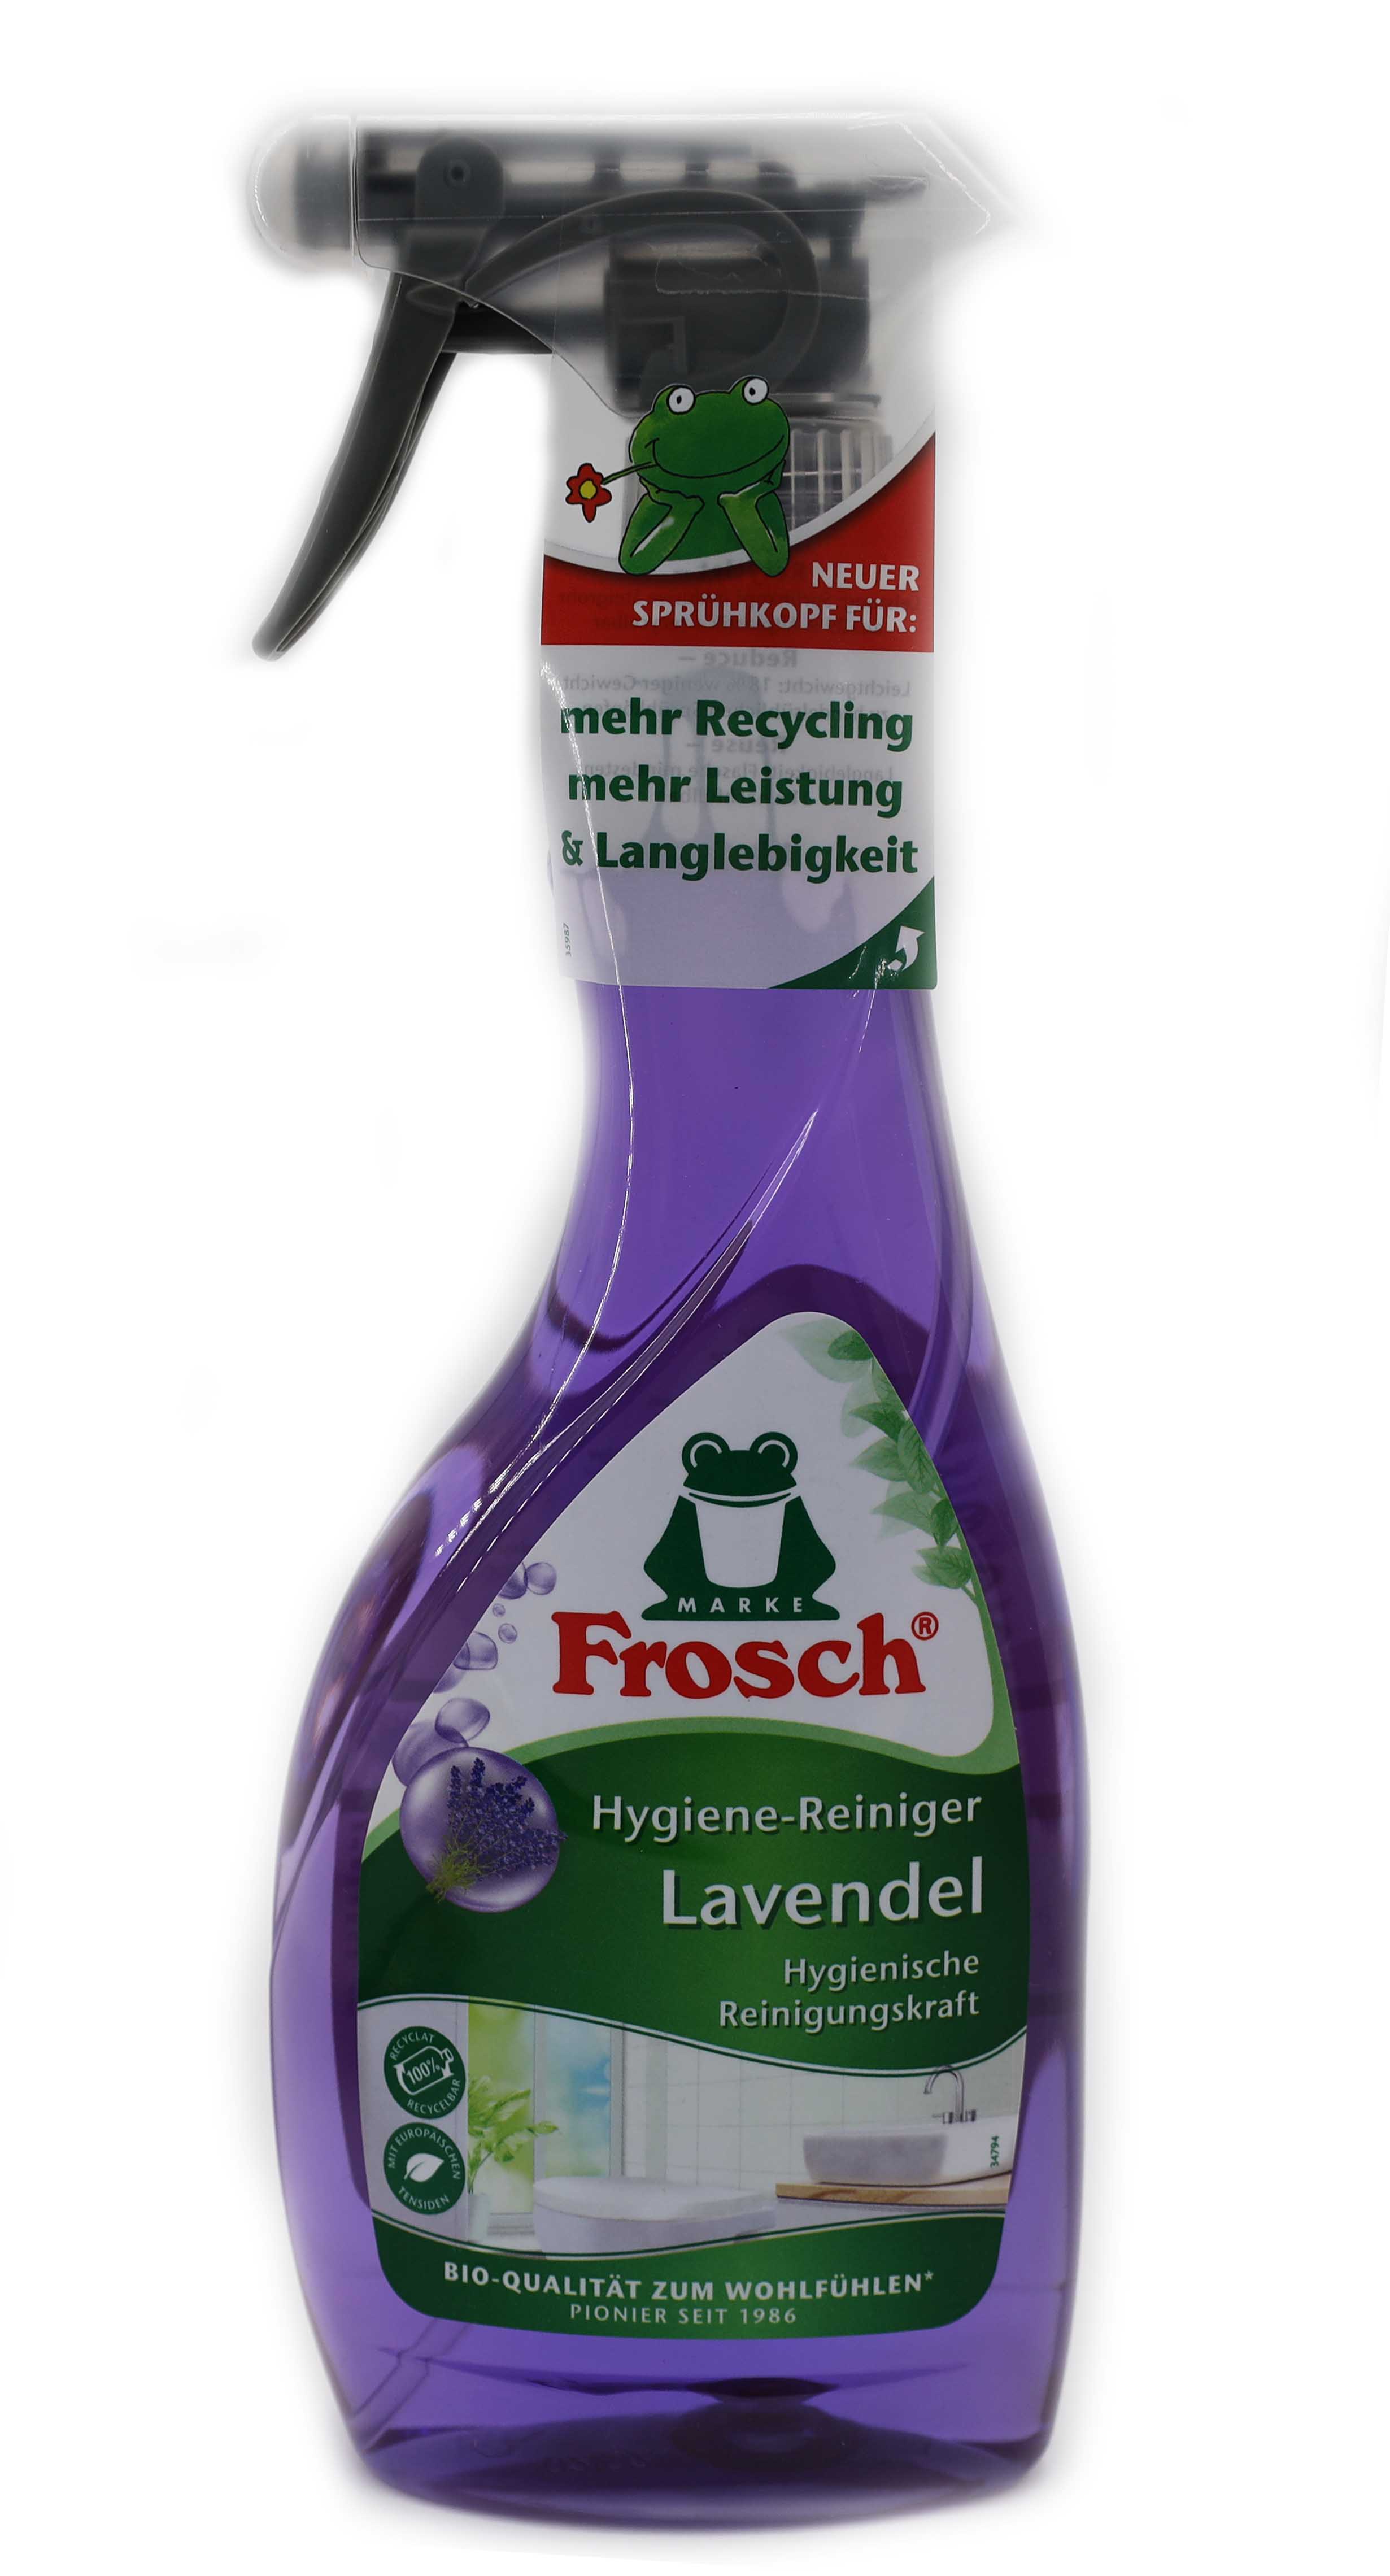 Frosch Hygiene Reiniger Lavendel Spray 500ml